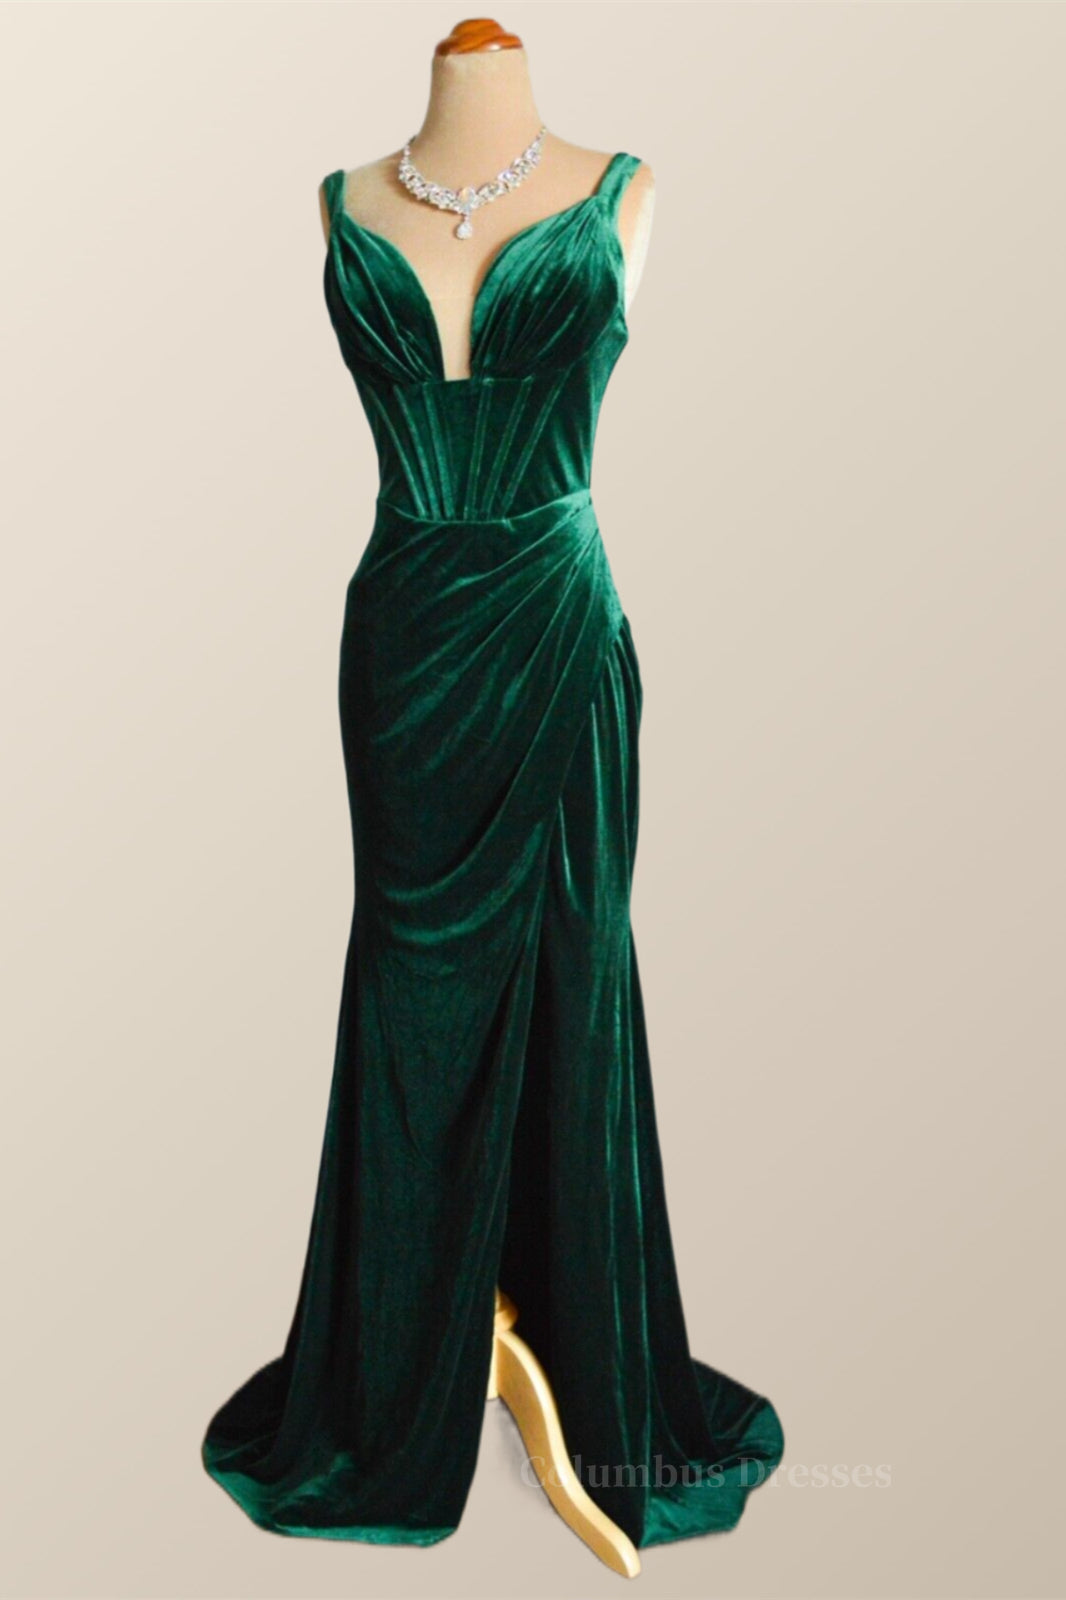 Winter Formal Dress Short, Green Velvet Mermaid Long Formal Dress with Slit